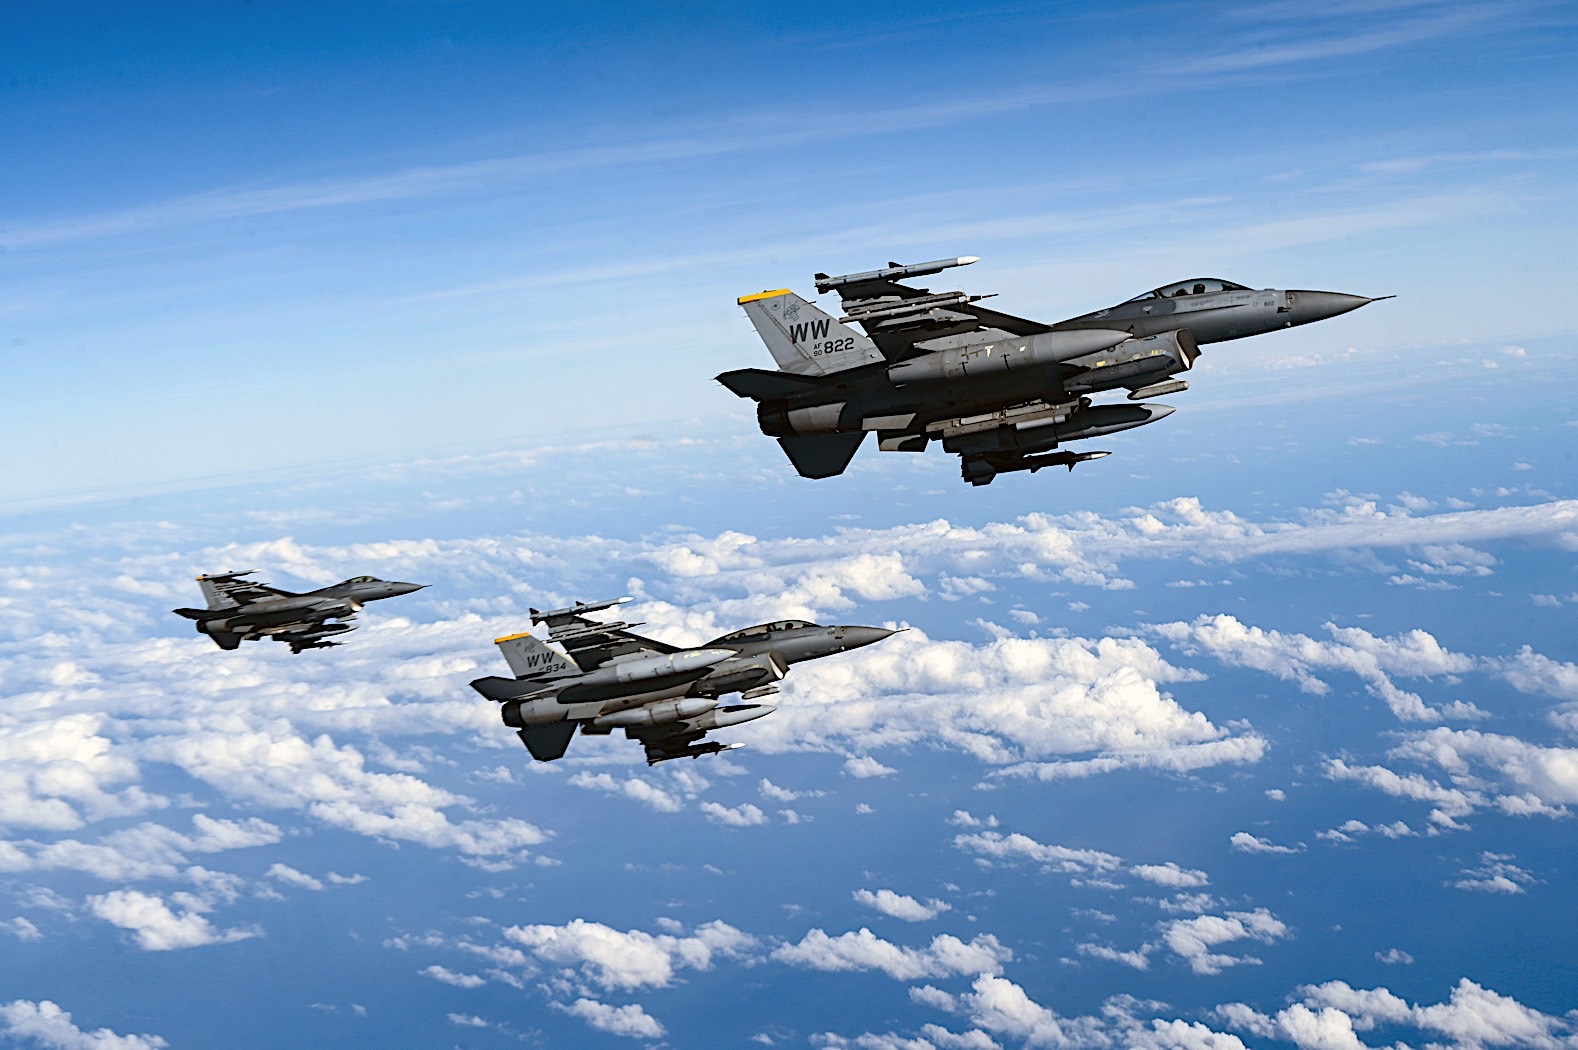 Ukraine erhält möglicherweise F-16 Fighting Falcon-Kampfflugzeuge nach Modernisierung der Flugplätze